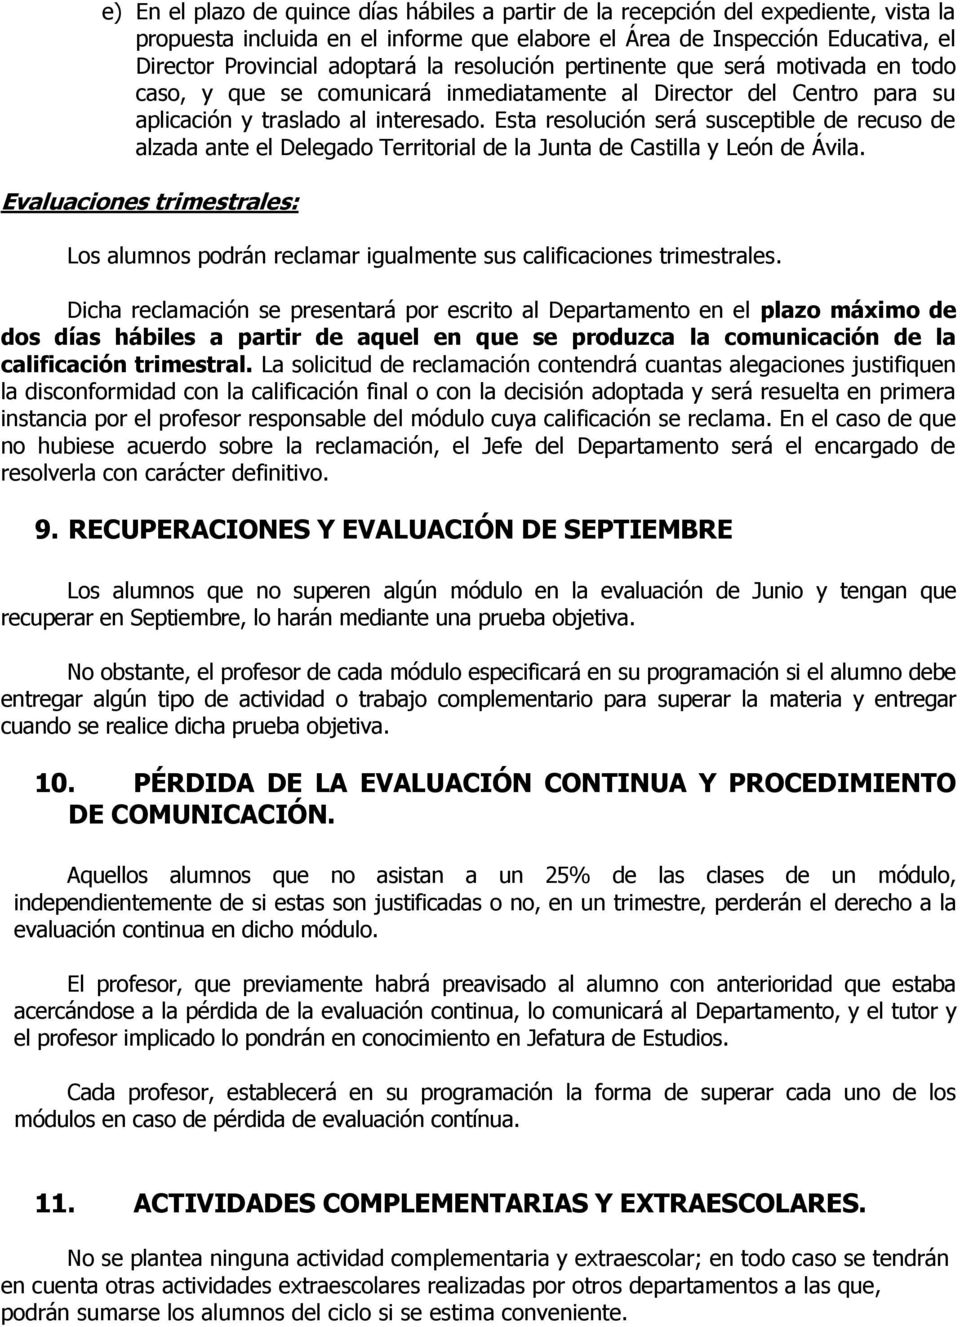 Esta resolución será susceptible de recuso de alzada ante el Delegado Territorial de la Junta de Castilla y León de Ávila.